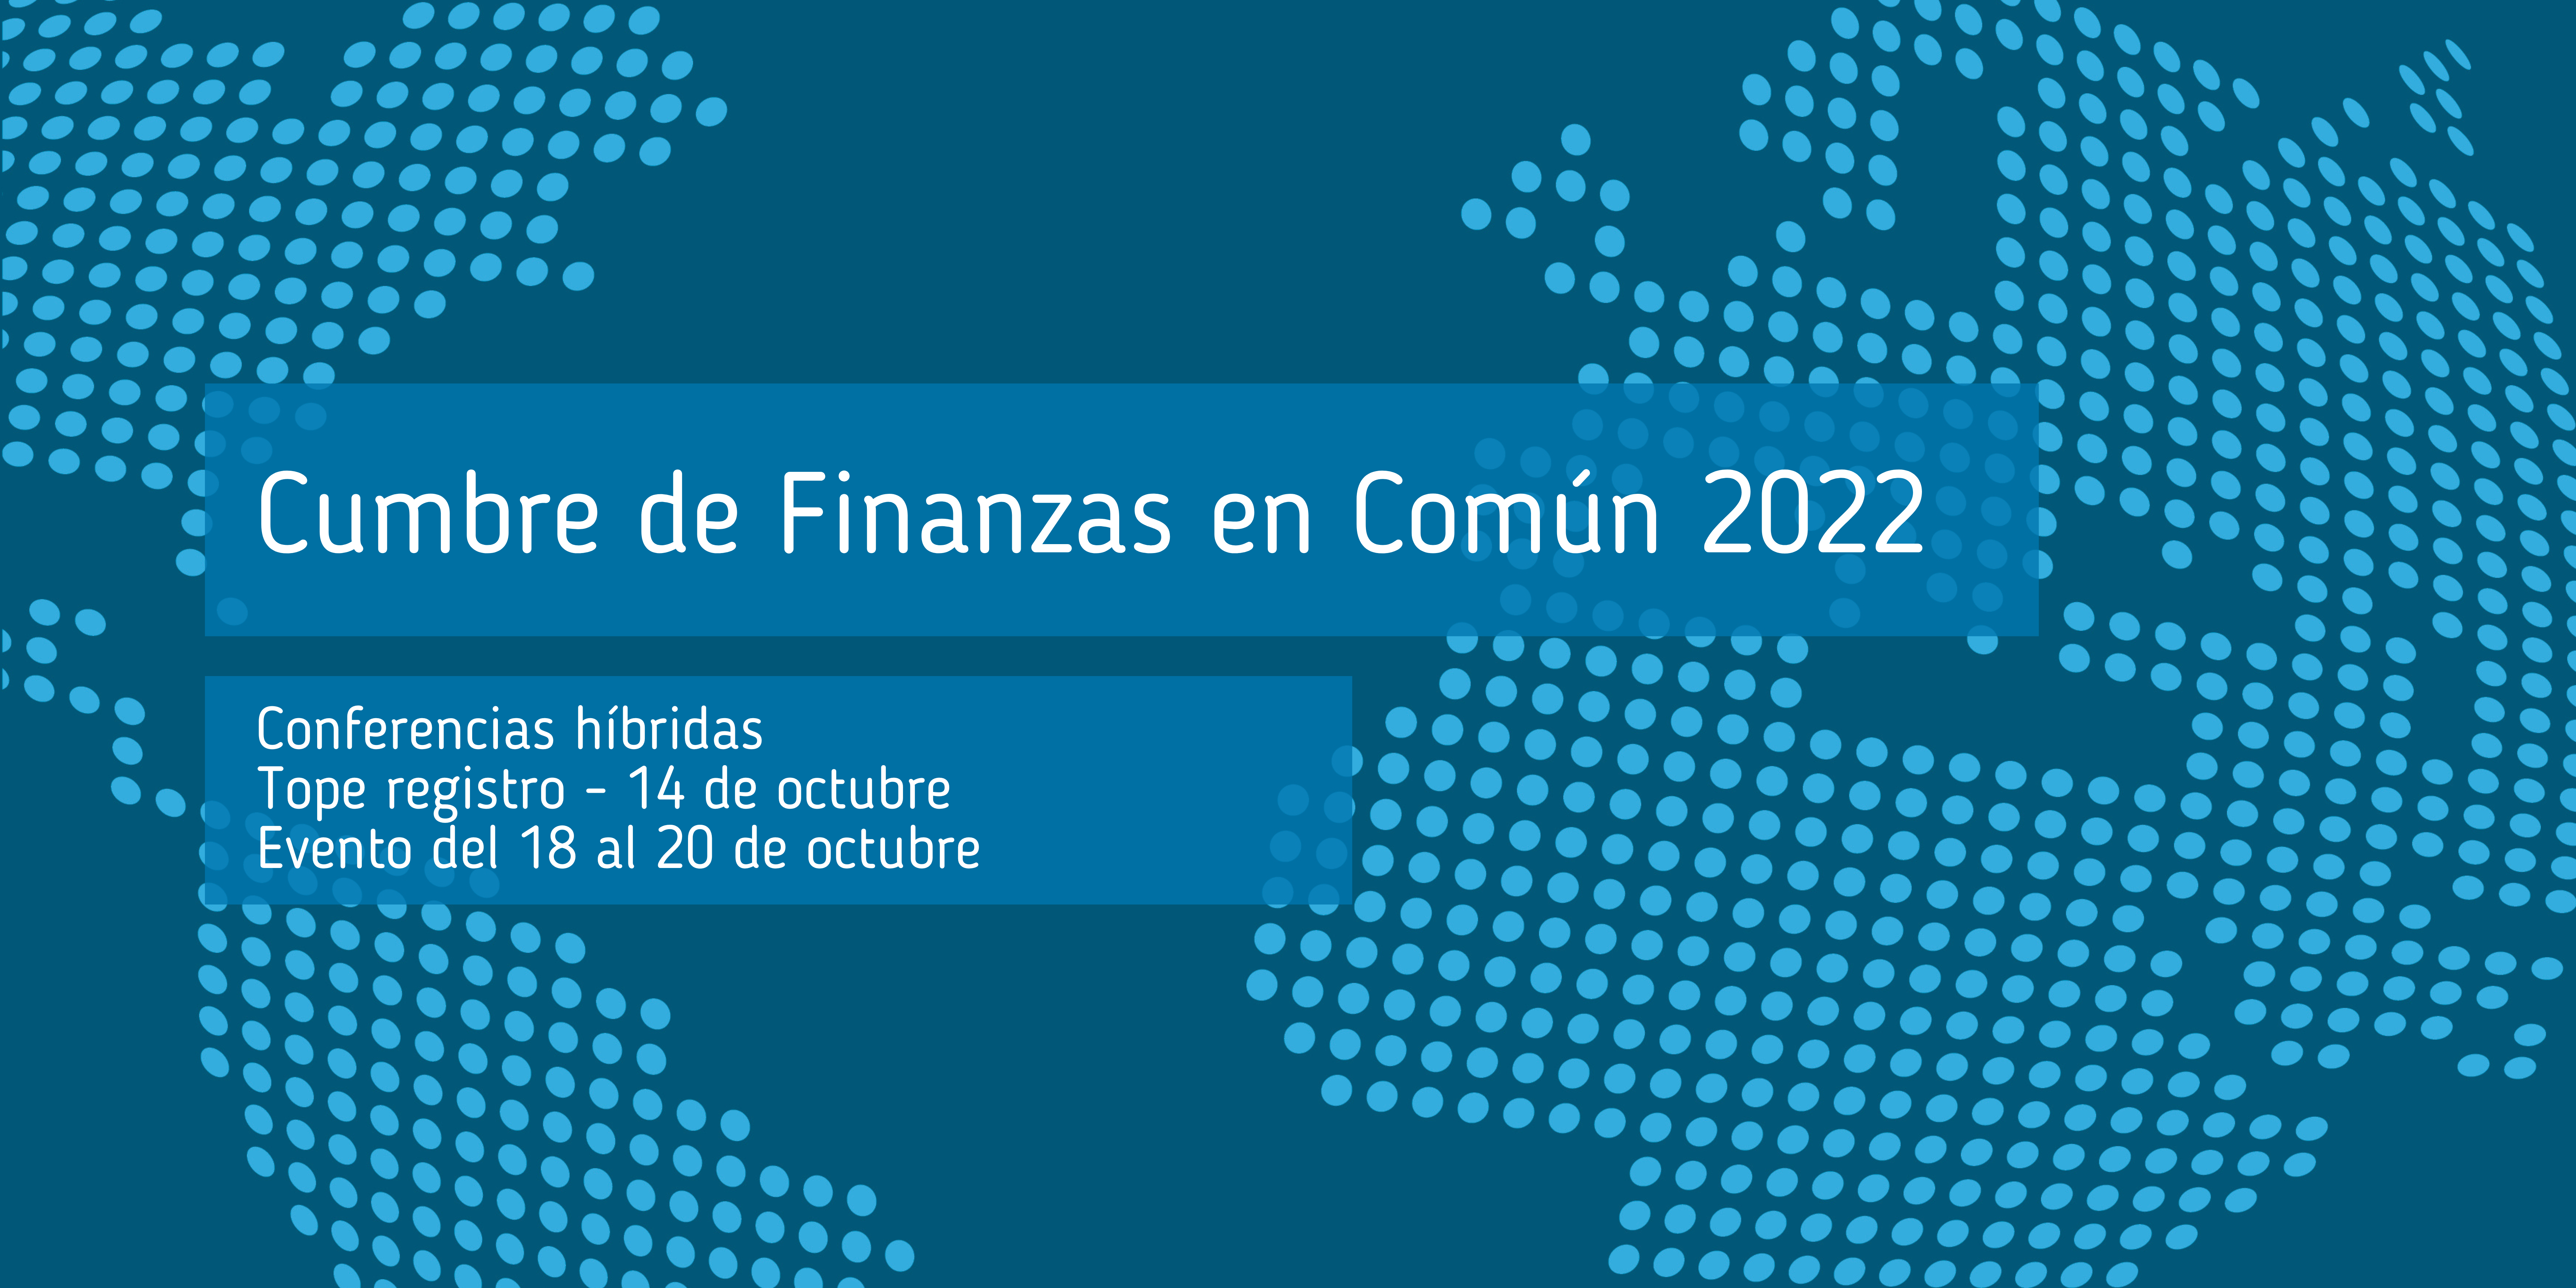 Cumbre_de_Finanzas_en_Común_2022